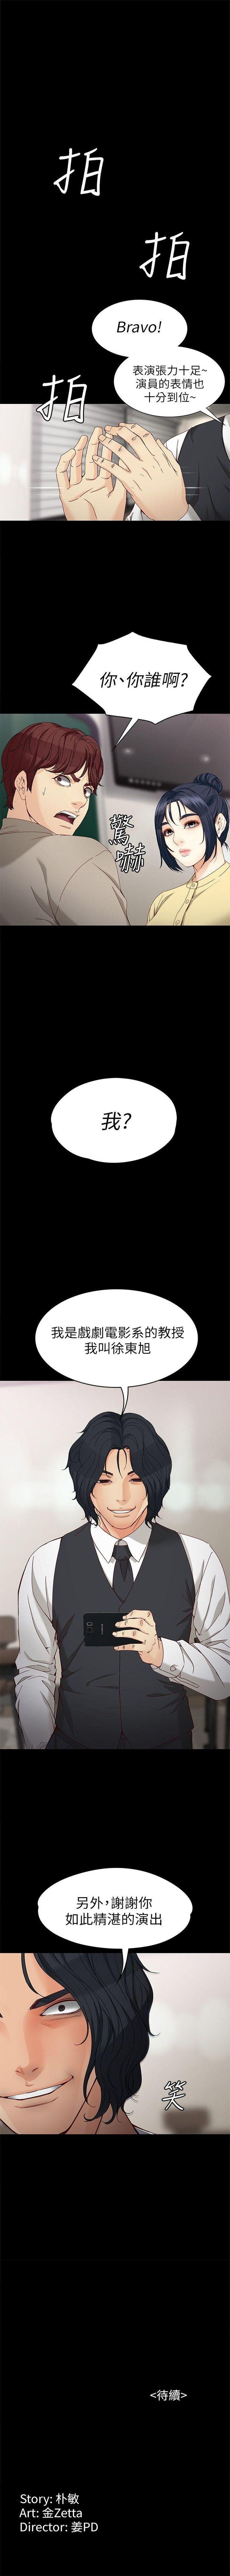 女大生世晶:无法自拔 1-40 中文翻译 （更新中） 201